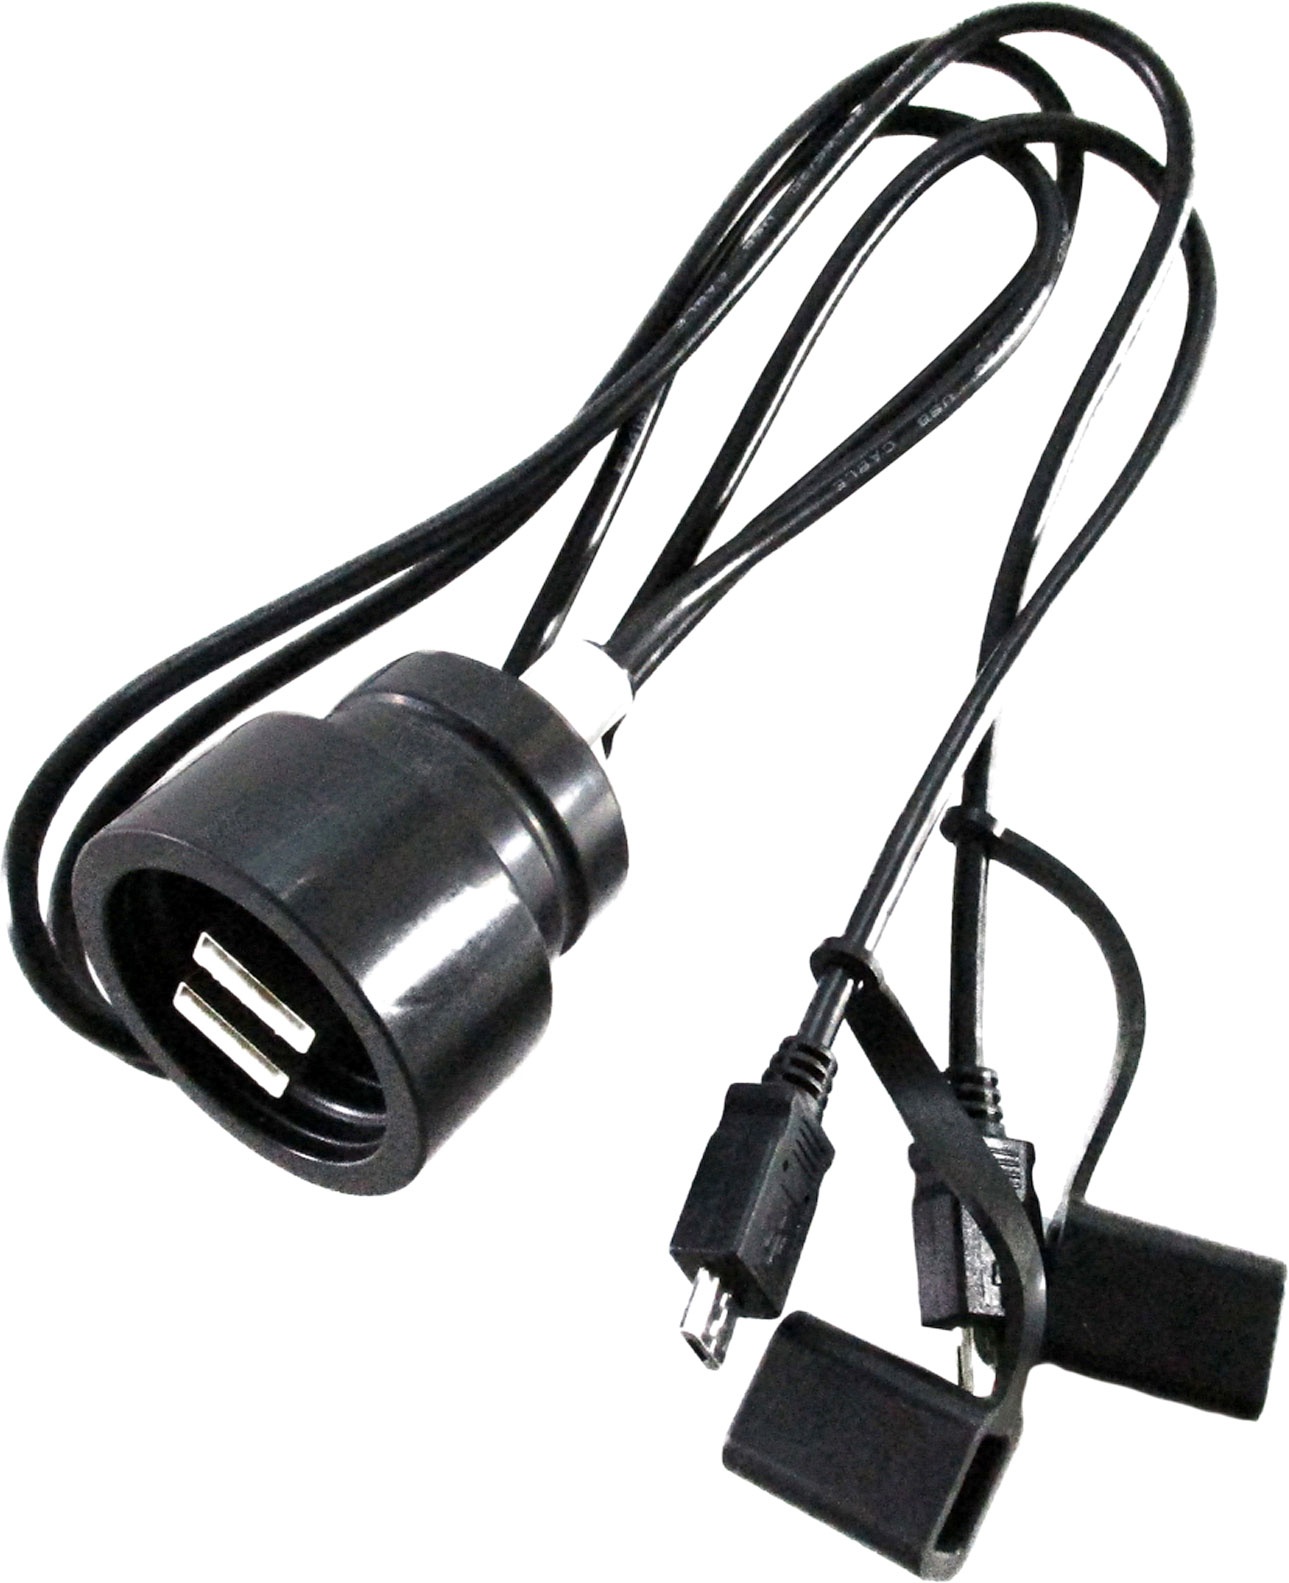 Booster 180-3029 Dual USB, fiche étanche - Noir